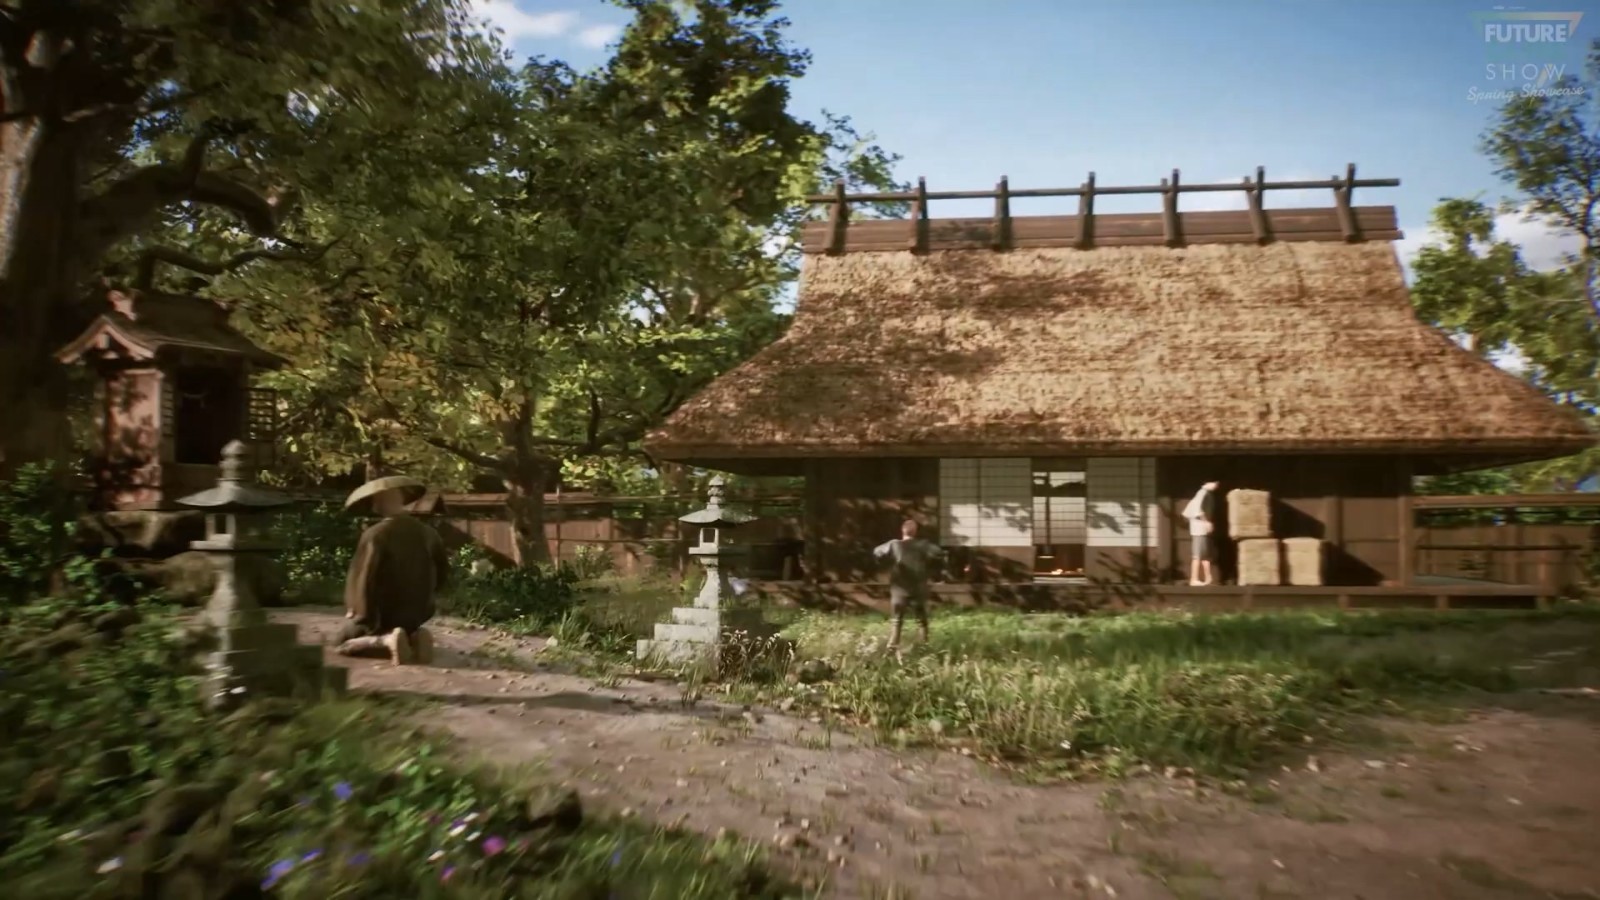 未来游戏展：《战国王朝》新宣传片 展示封建时代的日本